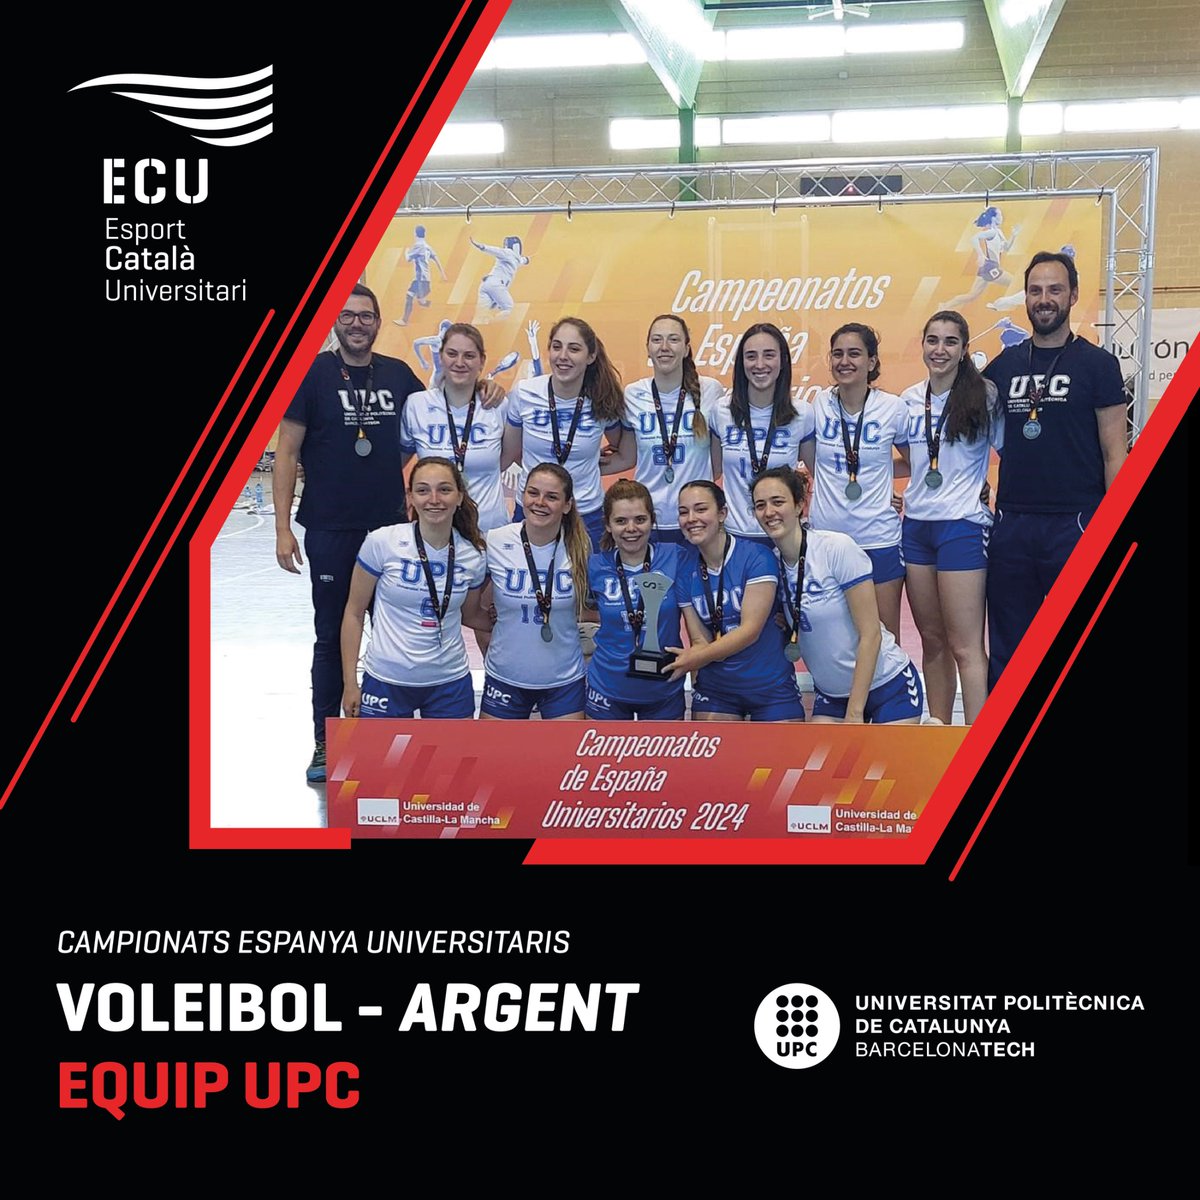 #CEU24 I Donem l’enhorabona a l’equip de la UPC, medallistes del CEU de voleibol ! 👏
🥈 Argent
📚 Universitat Politècnica de Catalunya CEU 
#EsportUniversitari #Esportcat